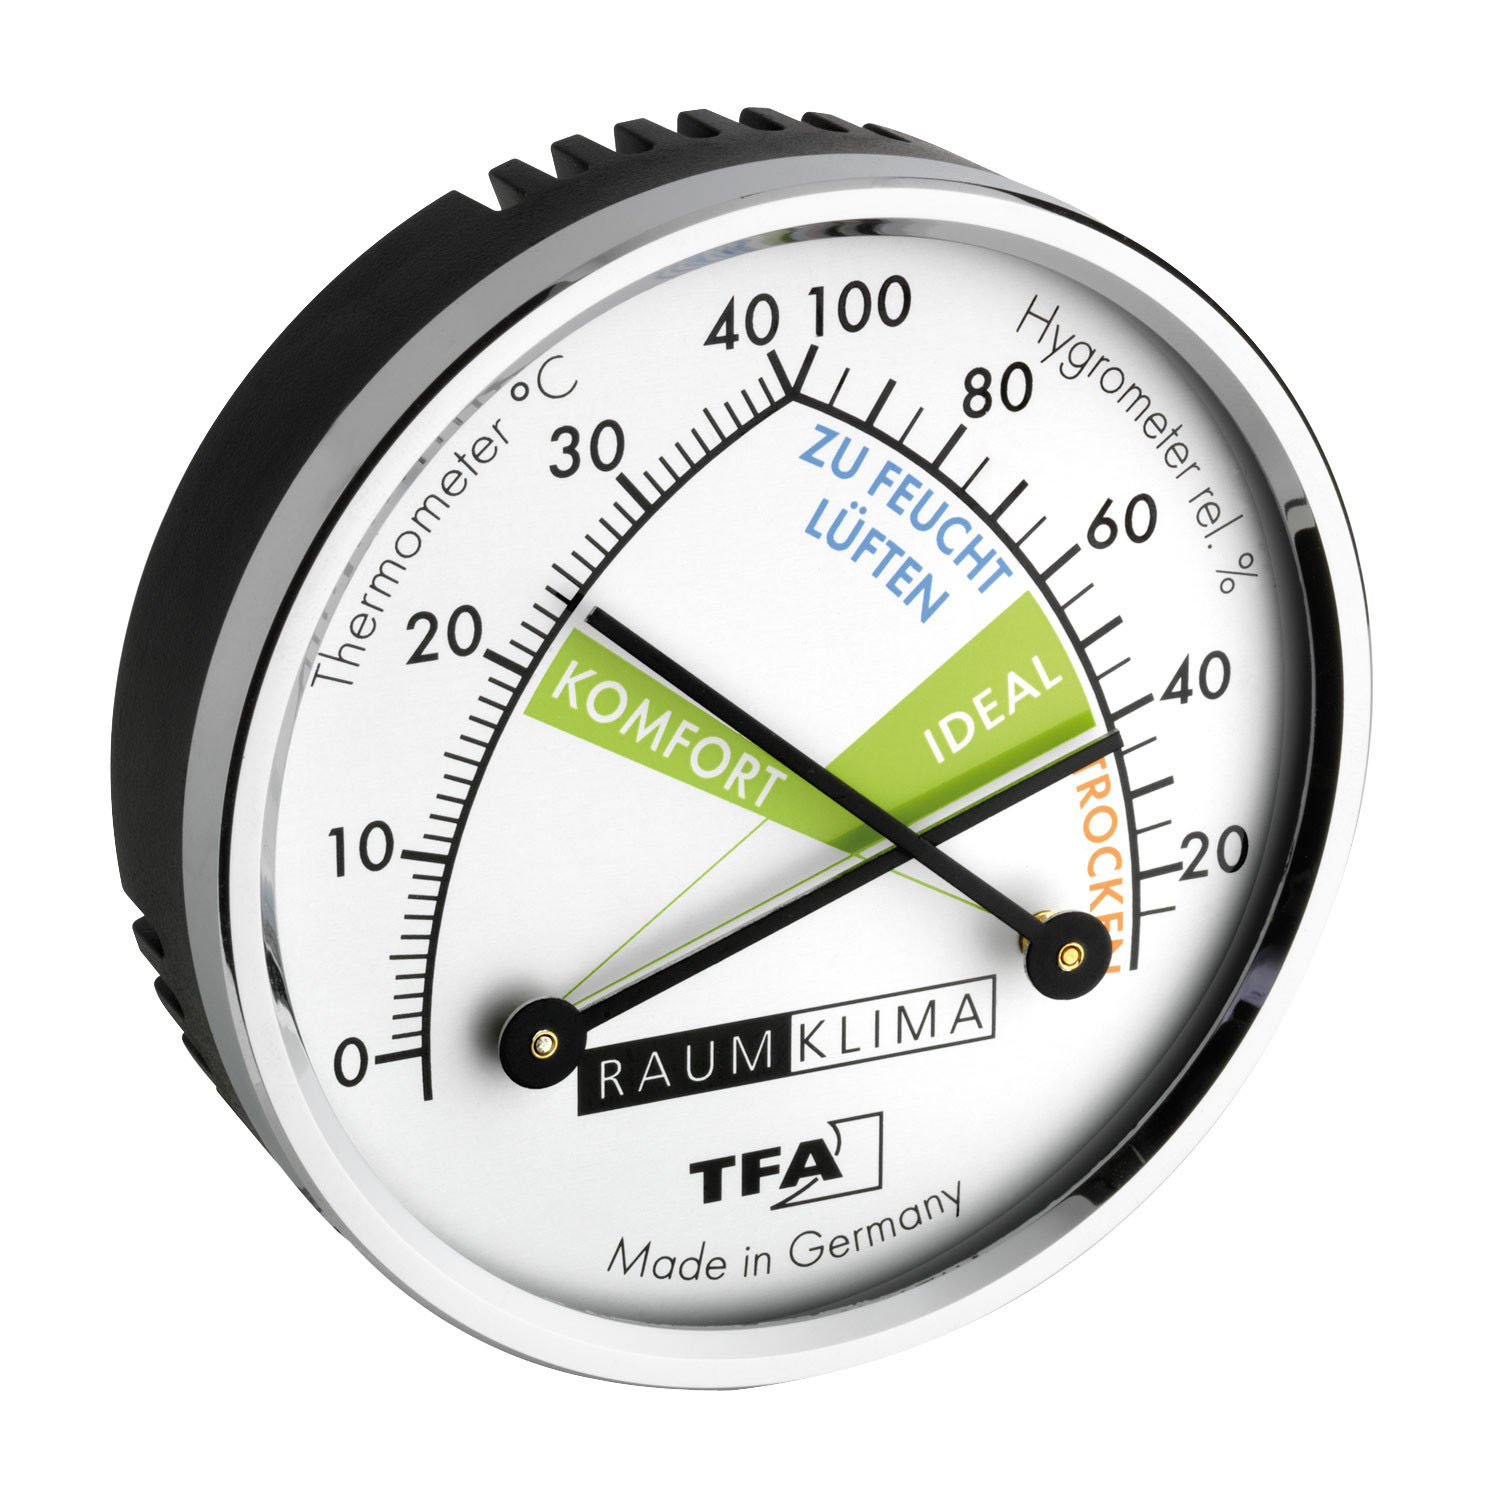 Ein Hygrometer ist abgebildet, die Anzeige gibt einen idealen Luftfeuchtigkeitsbereich aus.